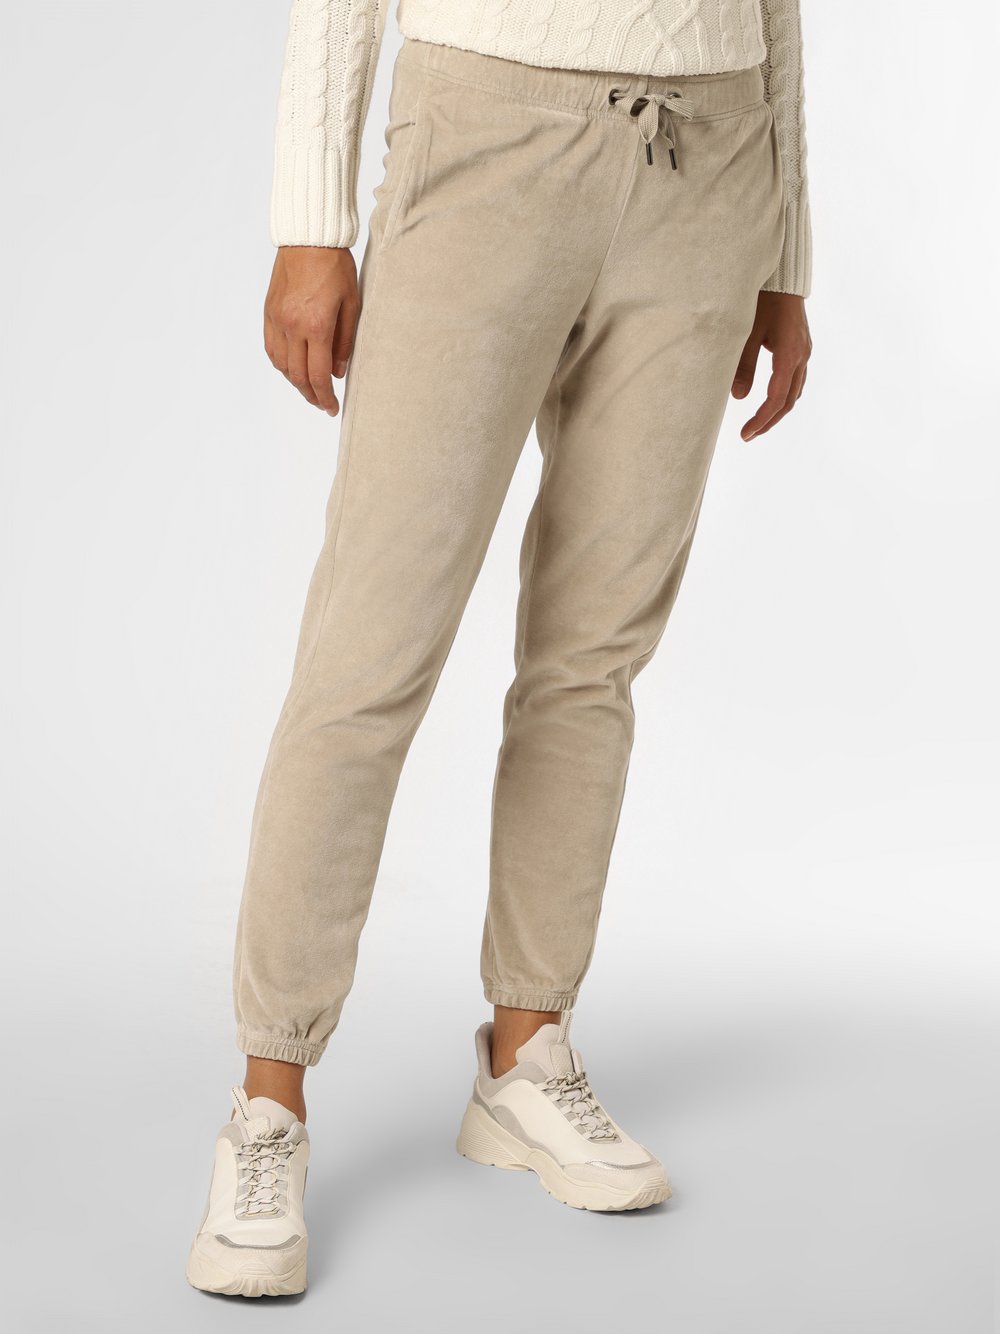 Juvia - Spodnie dresowe damskie – Conny, beżowy|szary